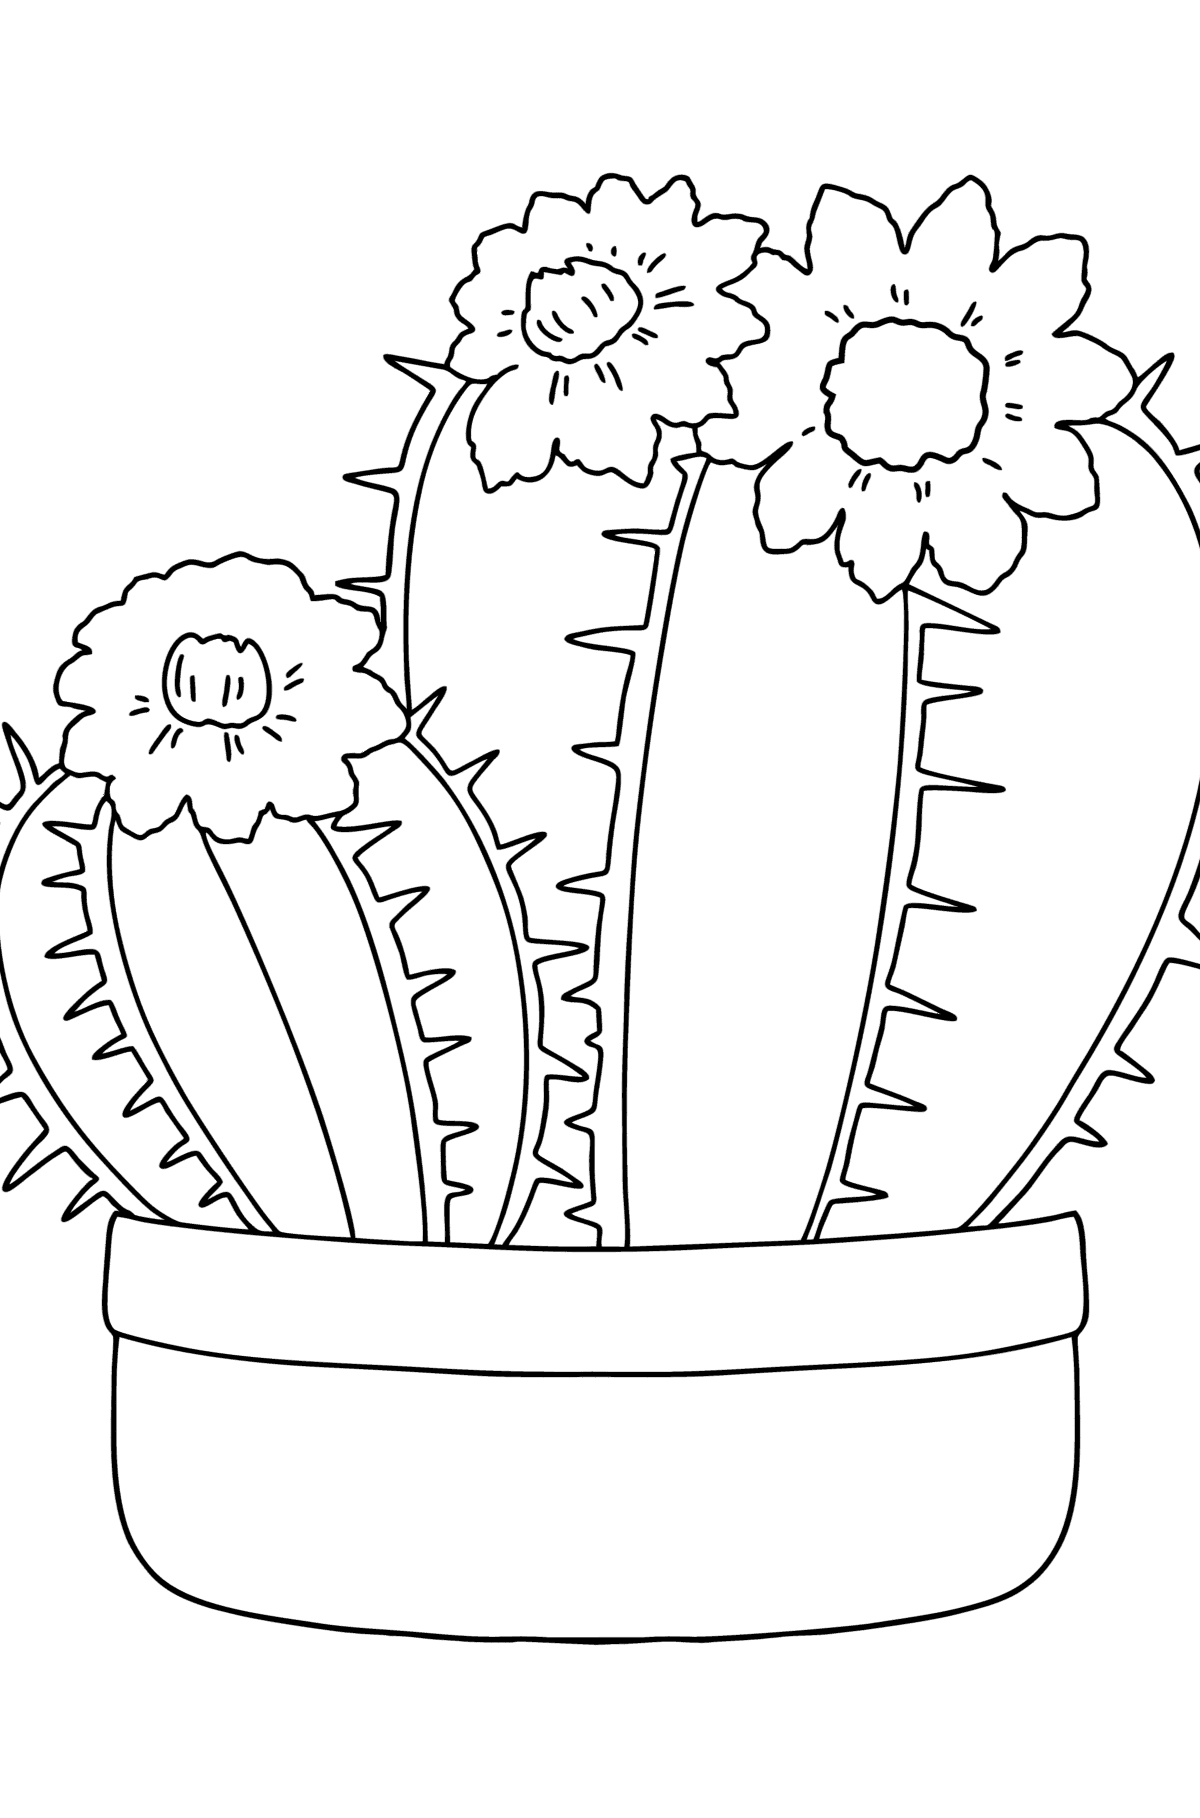 Ausmalbild Schöner Kaktus - Malvorlagen für Kinder